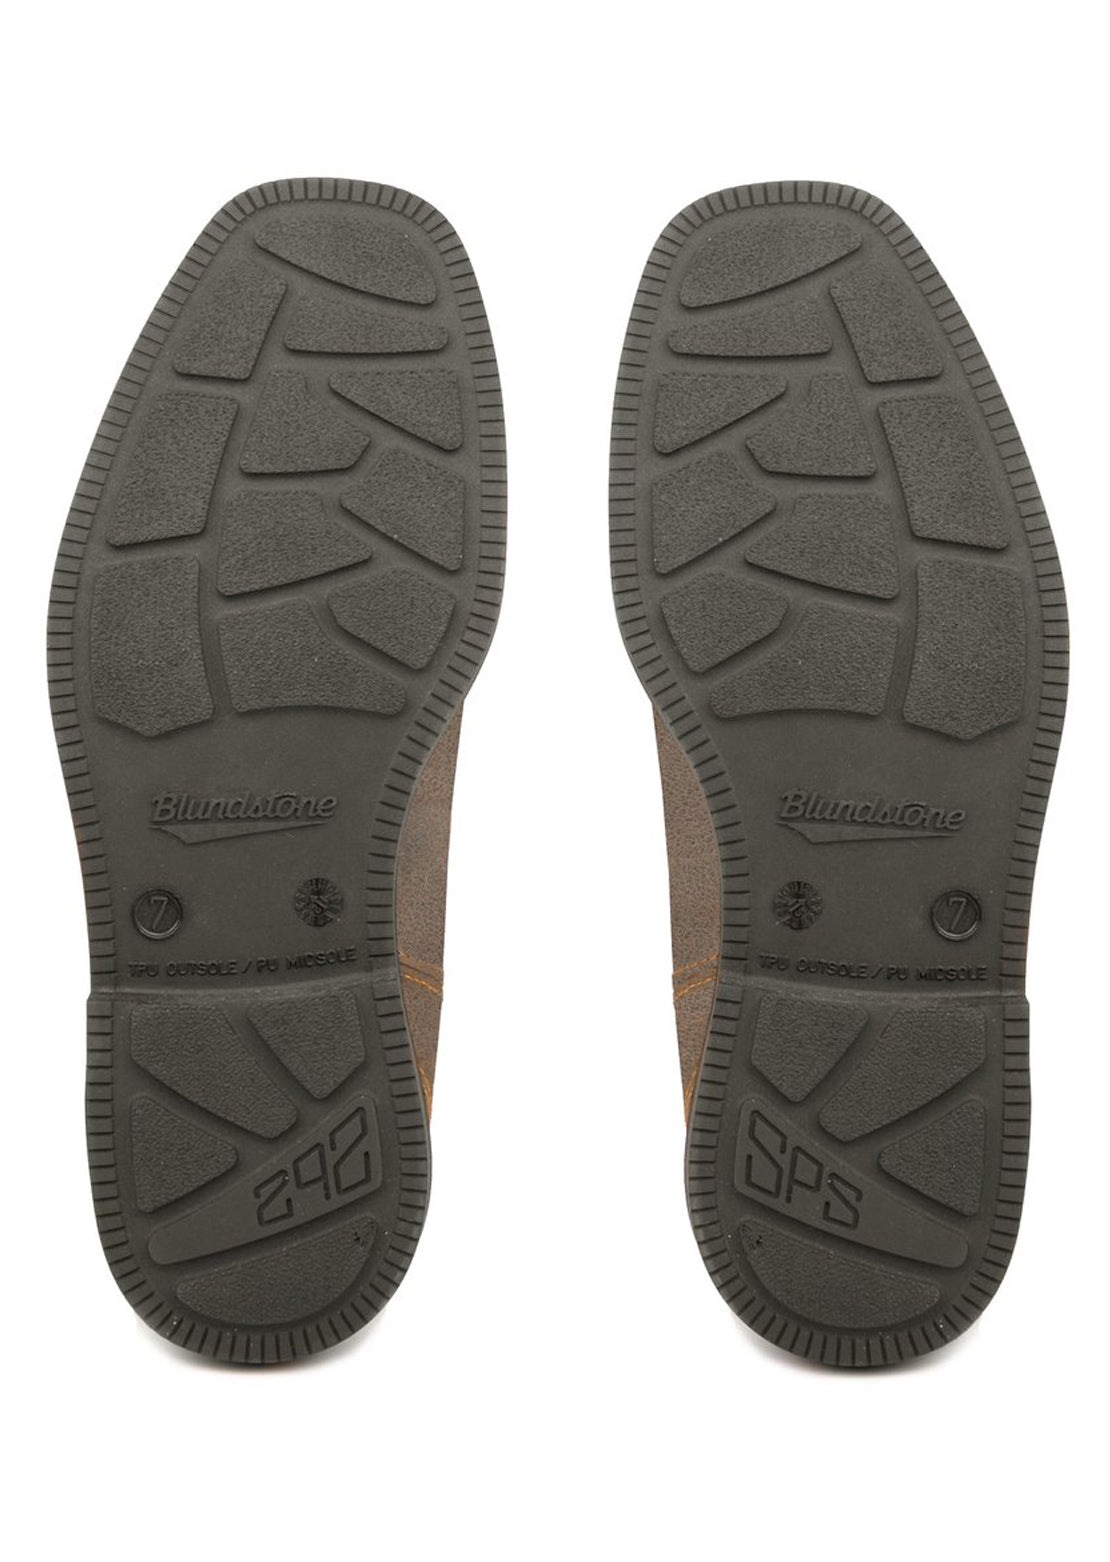 Blundstone 1395 Chisel Toe Boots (1395) Steel Grey